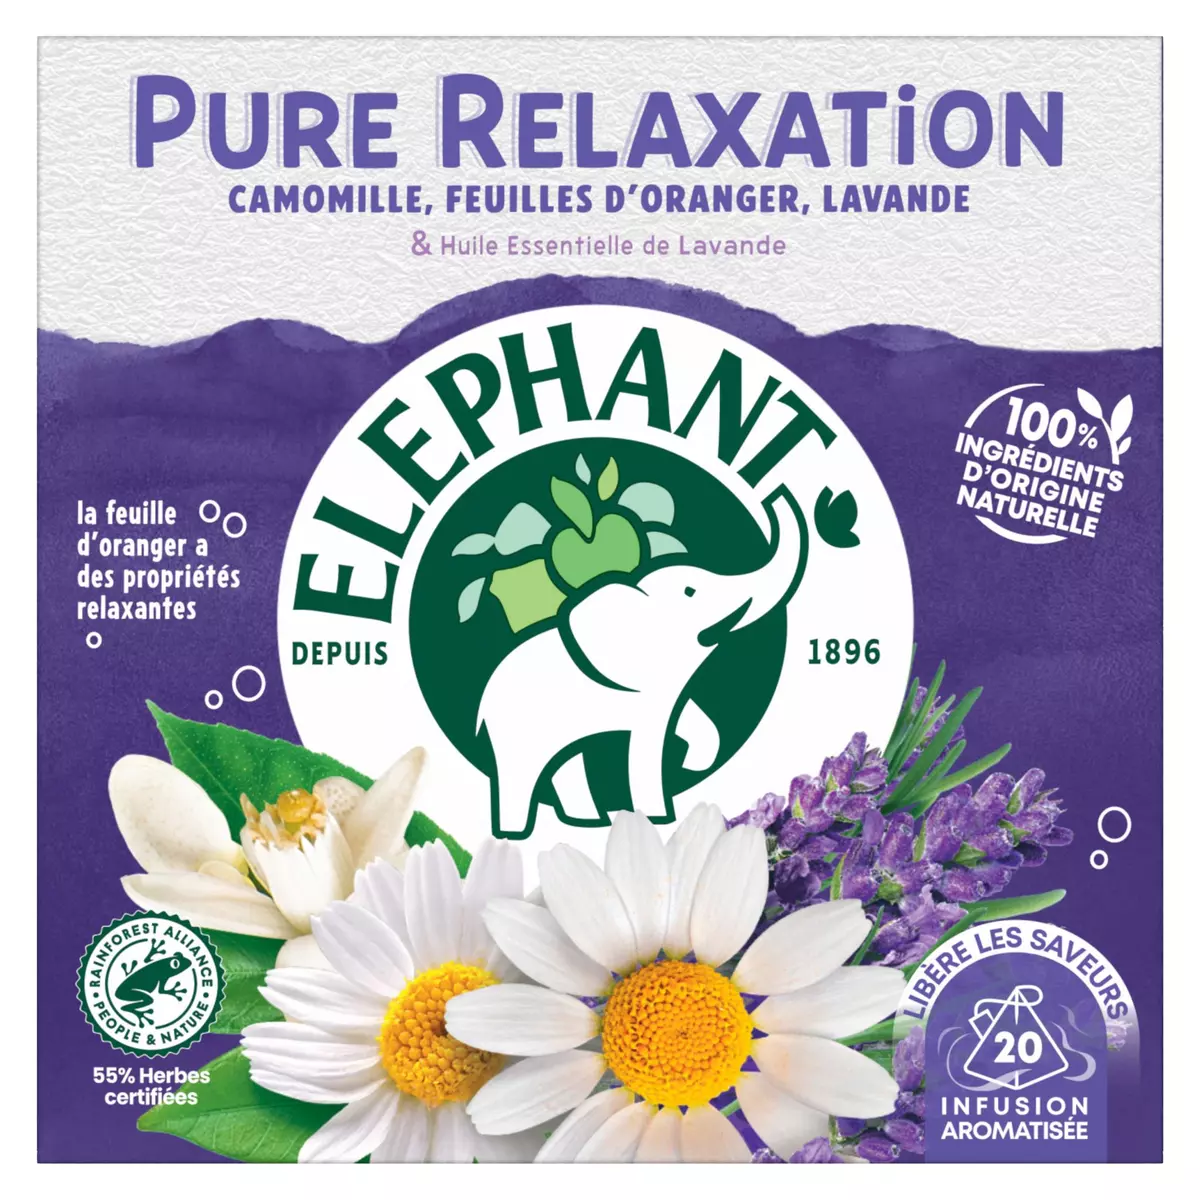 Rappel de produit : des infusions de la marque Elephant retirées de la  vente